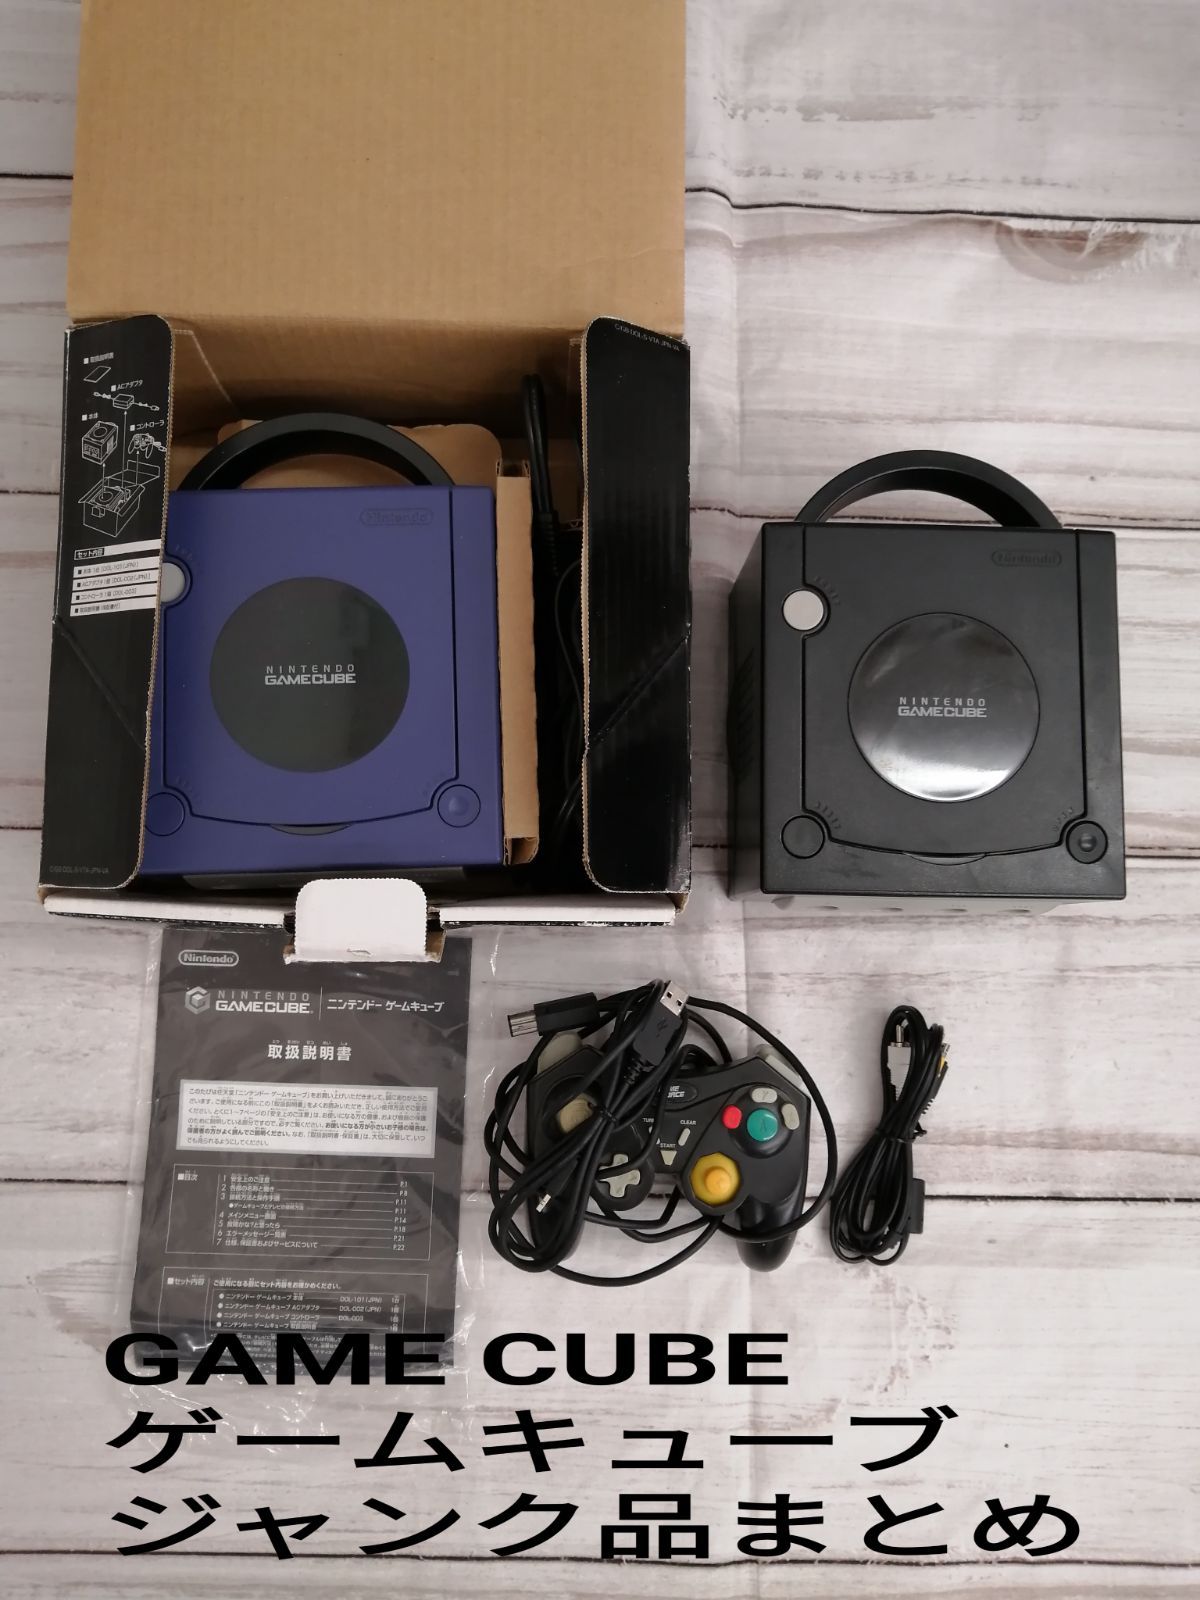 Nintendo GAME CUBE ニンテンドー ゲームキューブ 本体2つ (ブラック 